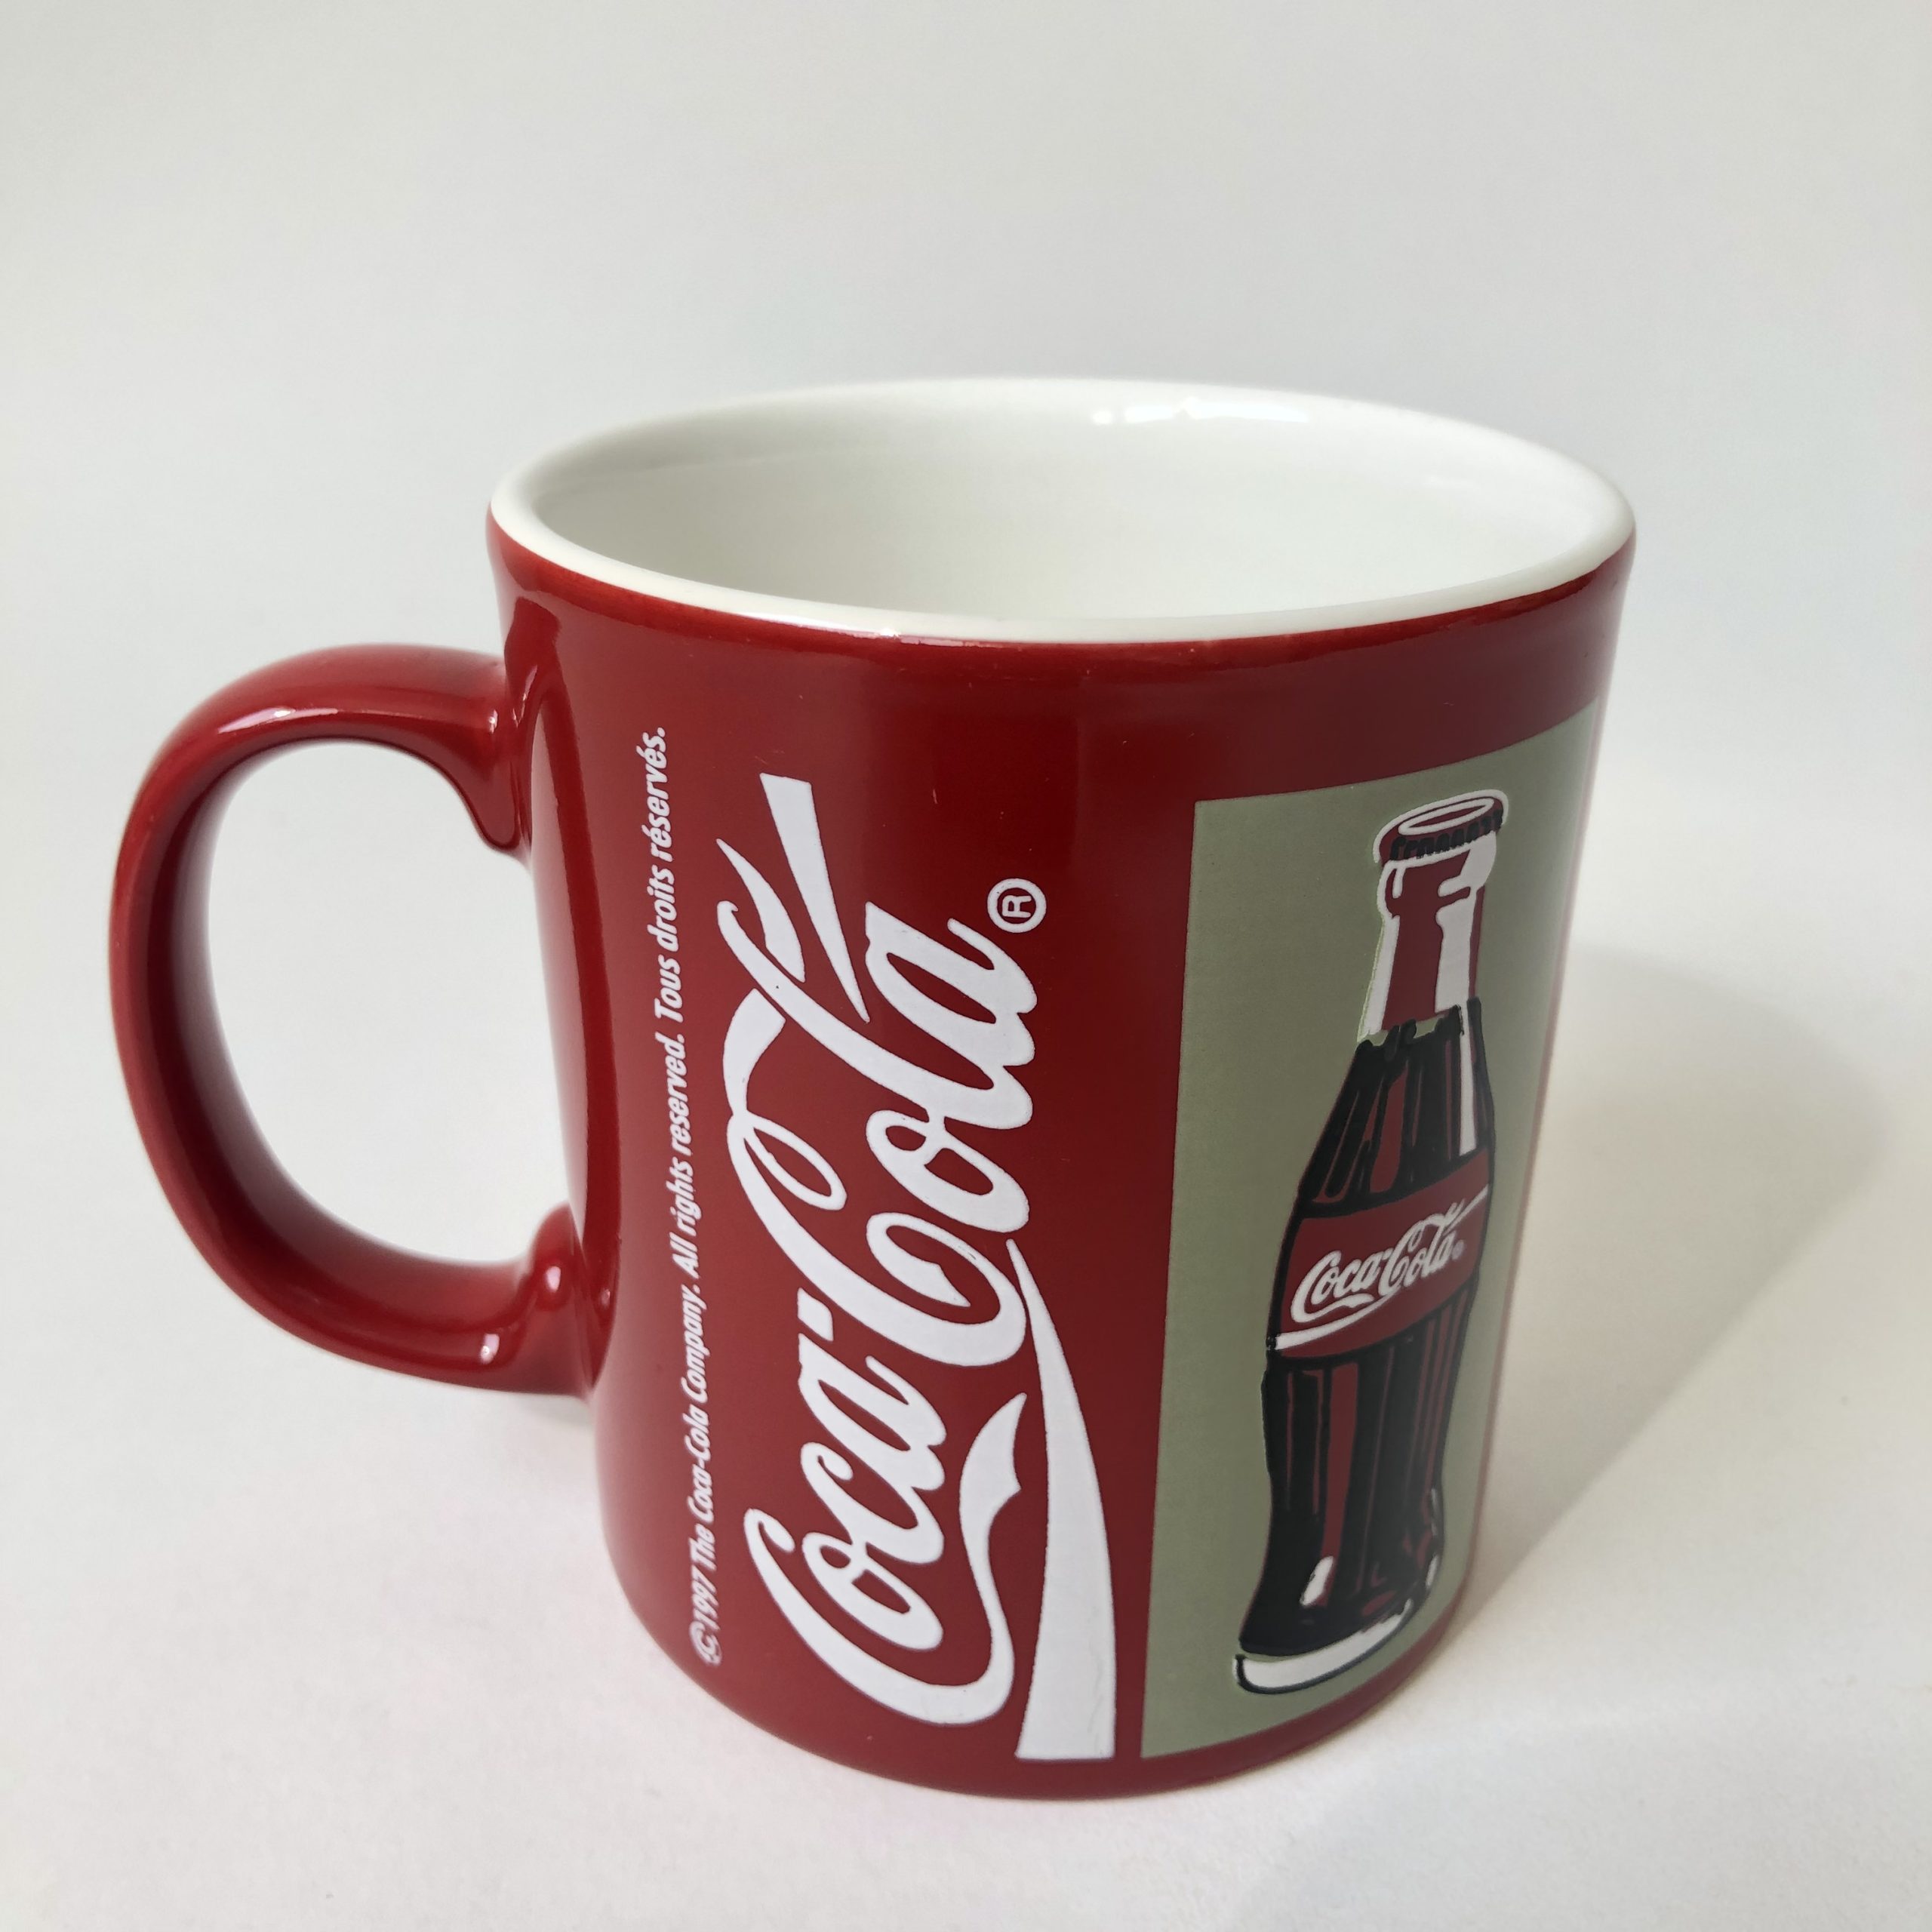 Mok Coca Cola uit 1997 – inhoud 300 ml – hoogte 9 cm (1)